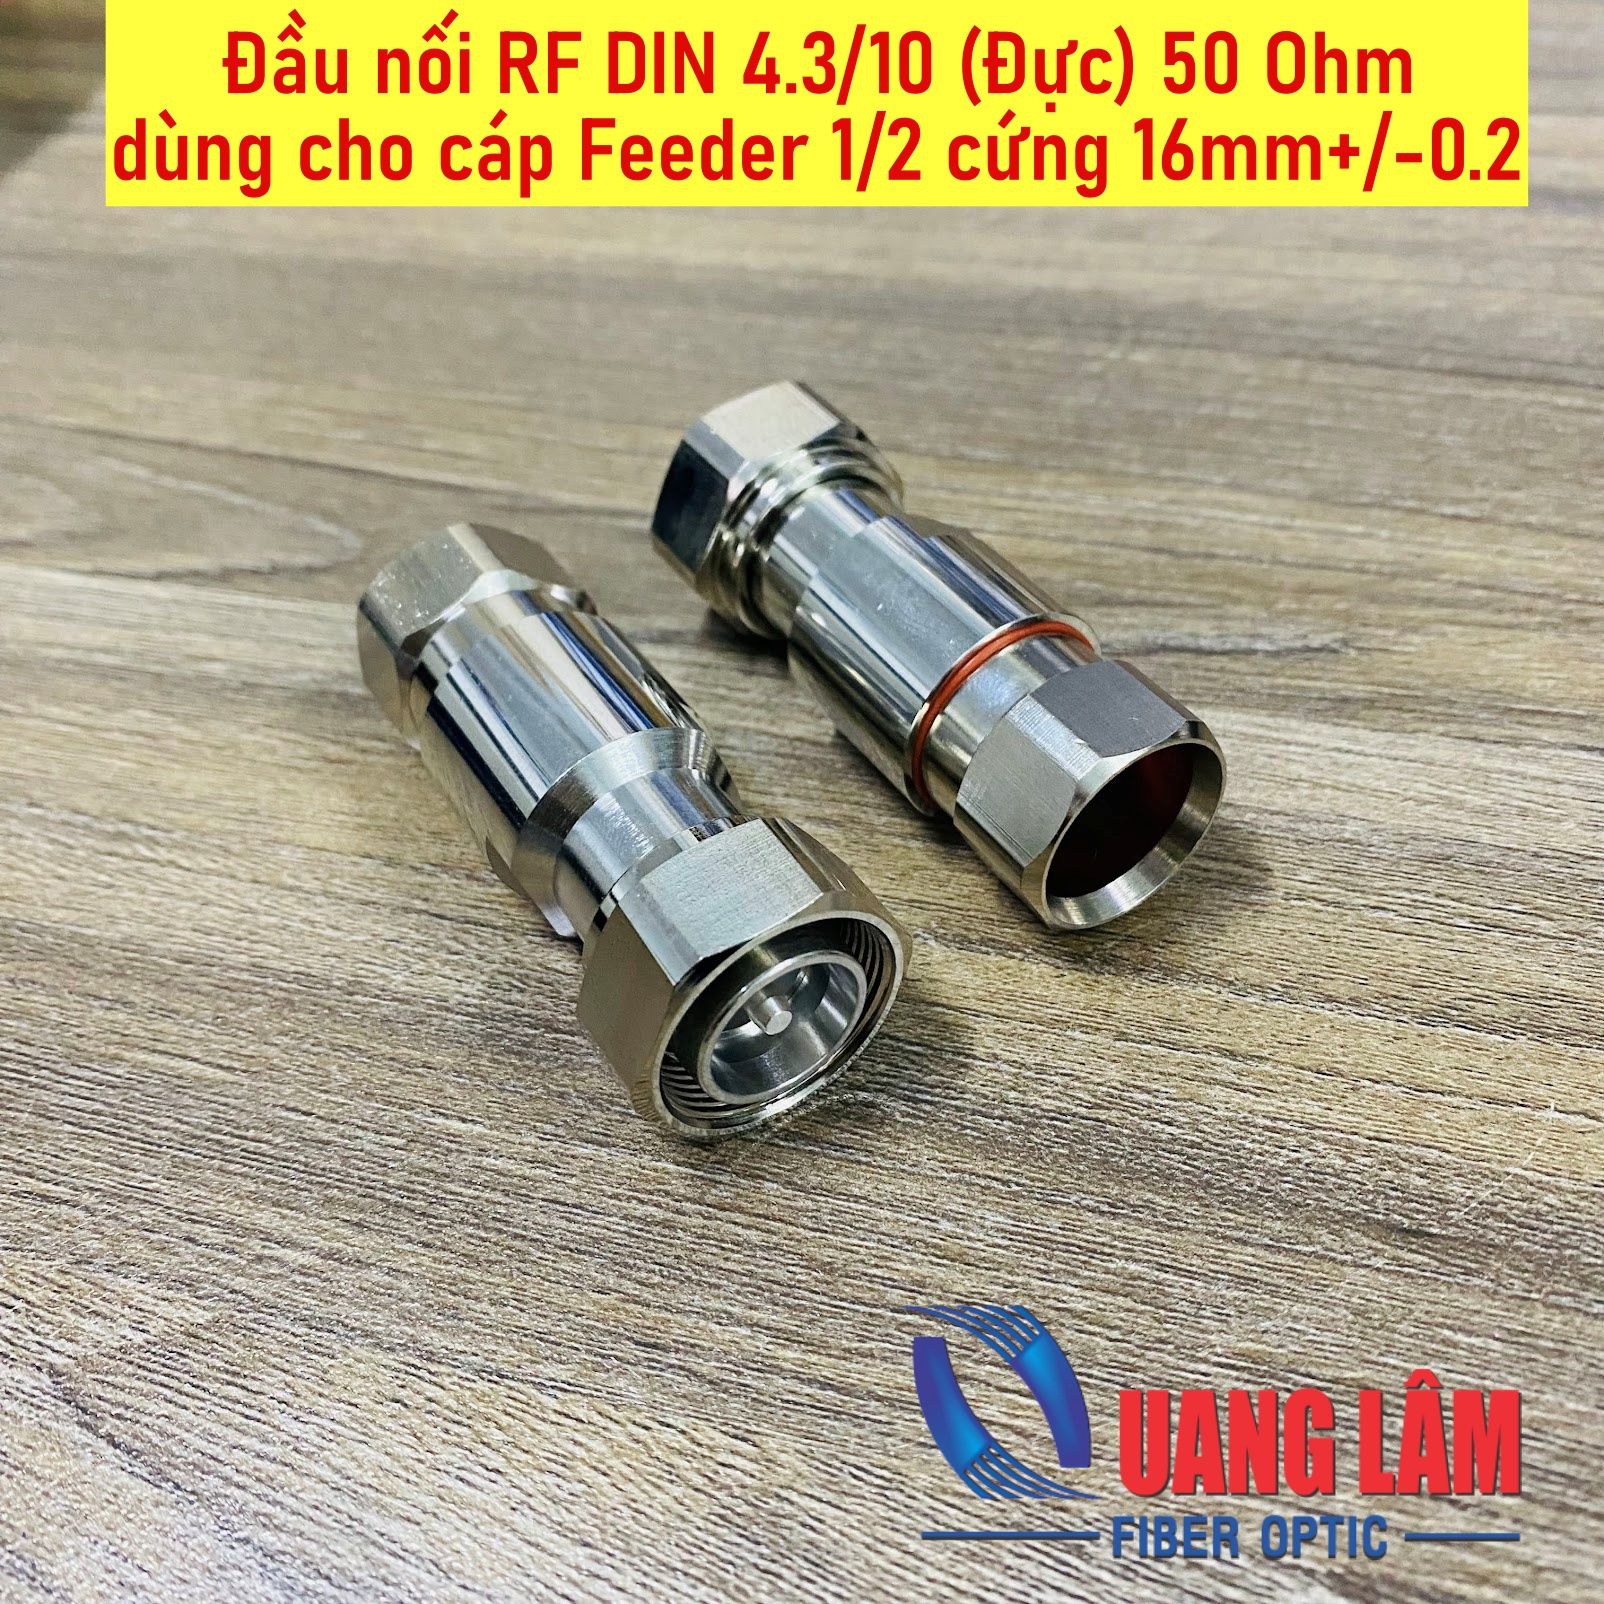 Đầu nối RF DIN 4.3/10 (Đực) 50 Ohm dùng cho cáp Feeder 1/2 cứng Mini DIN 4.3-10-J1/2